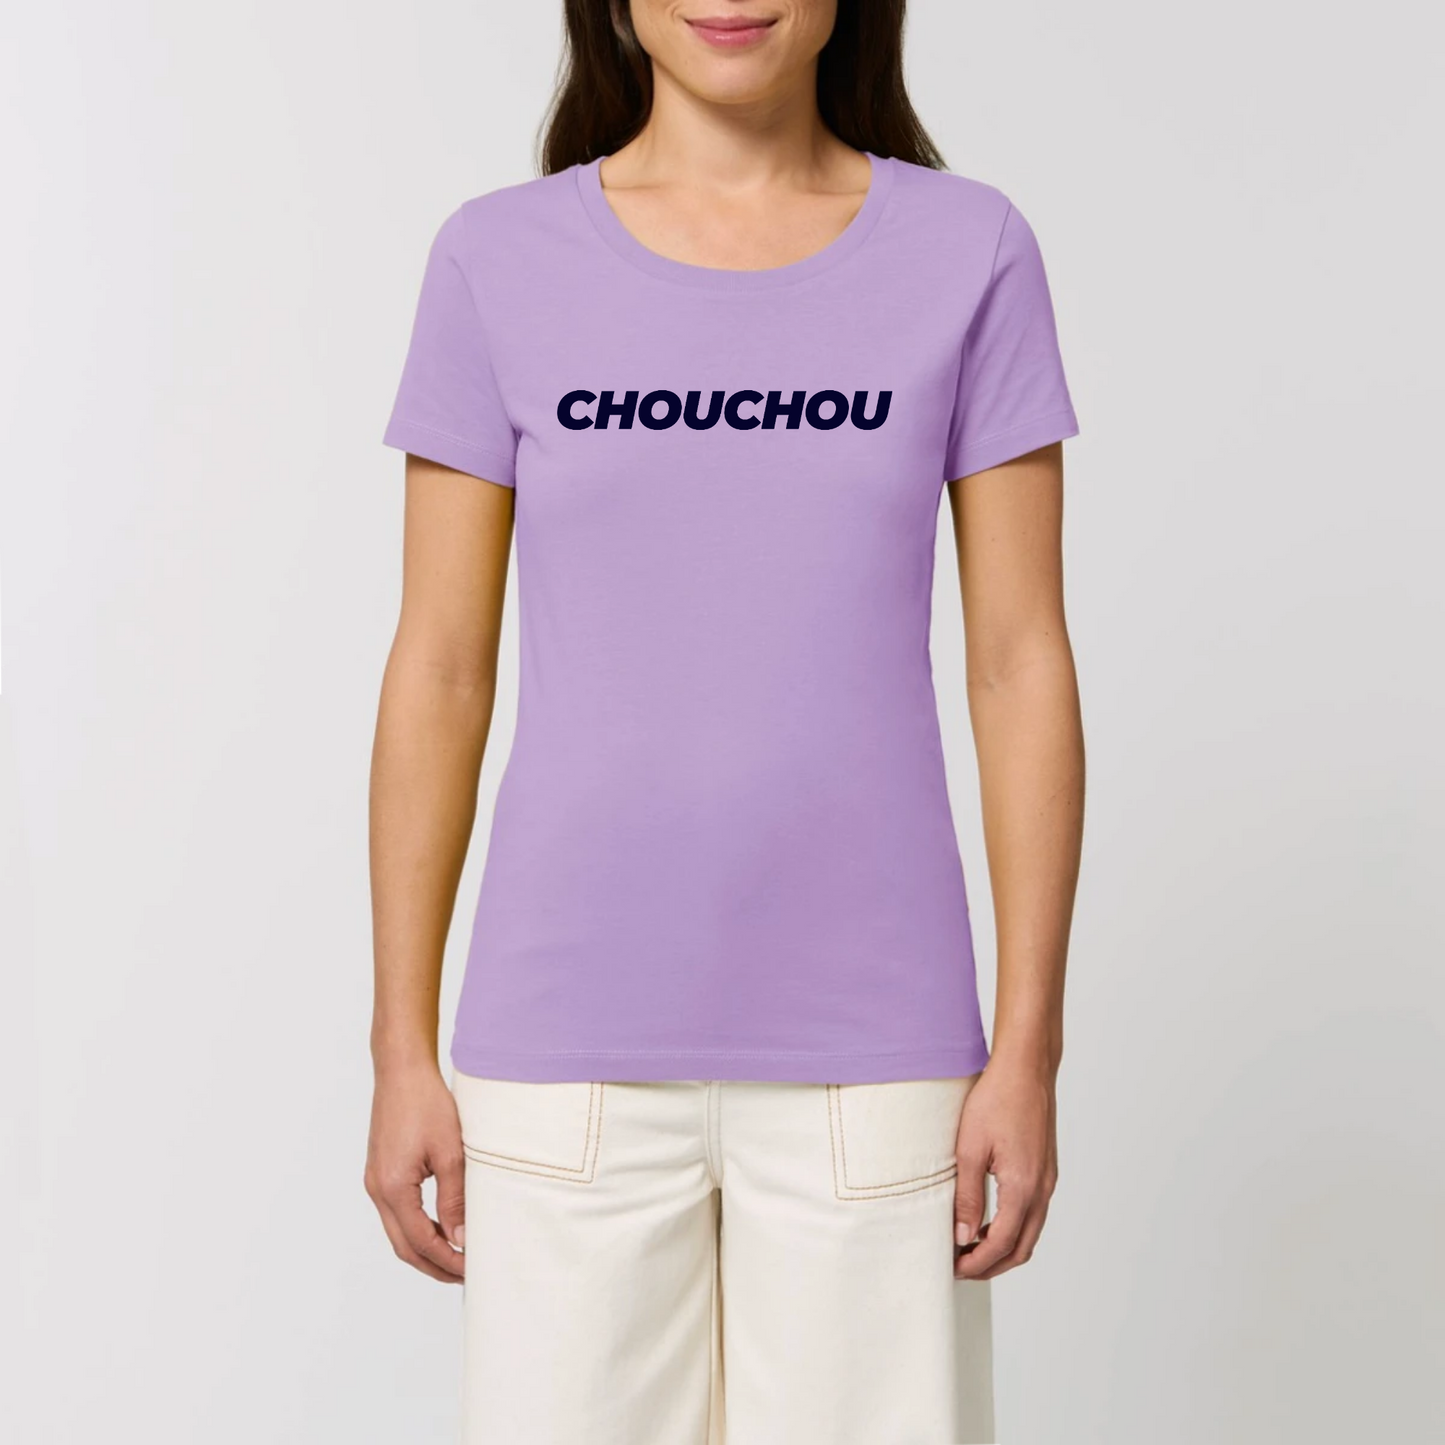 t-shirt chouchou femme T-French, coton bio, manches courtes, coupe ajustée, surnom, saint valentin, Lavande